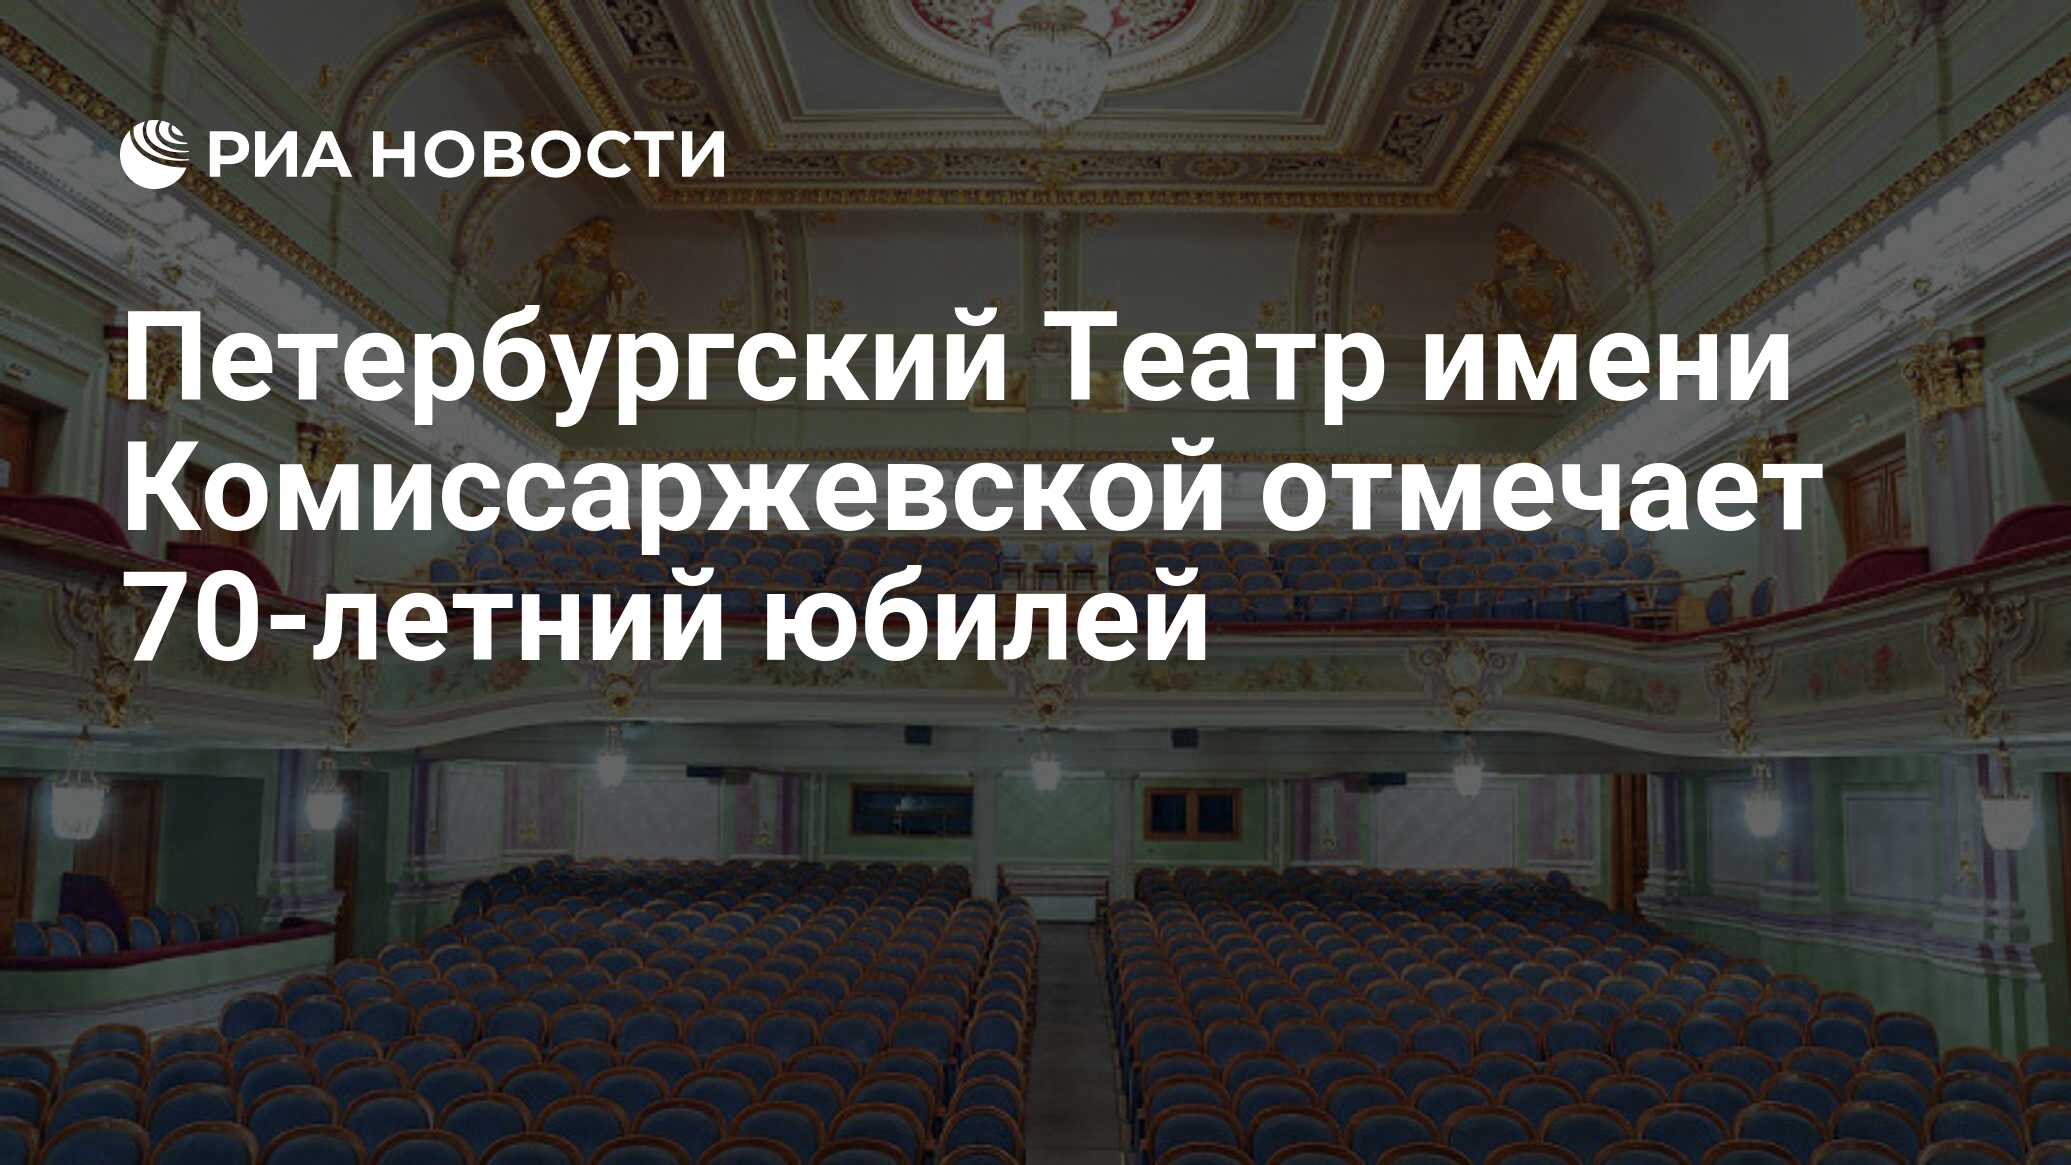 Театр имени Комиссаржевской Санкт-Петербург зал